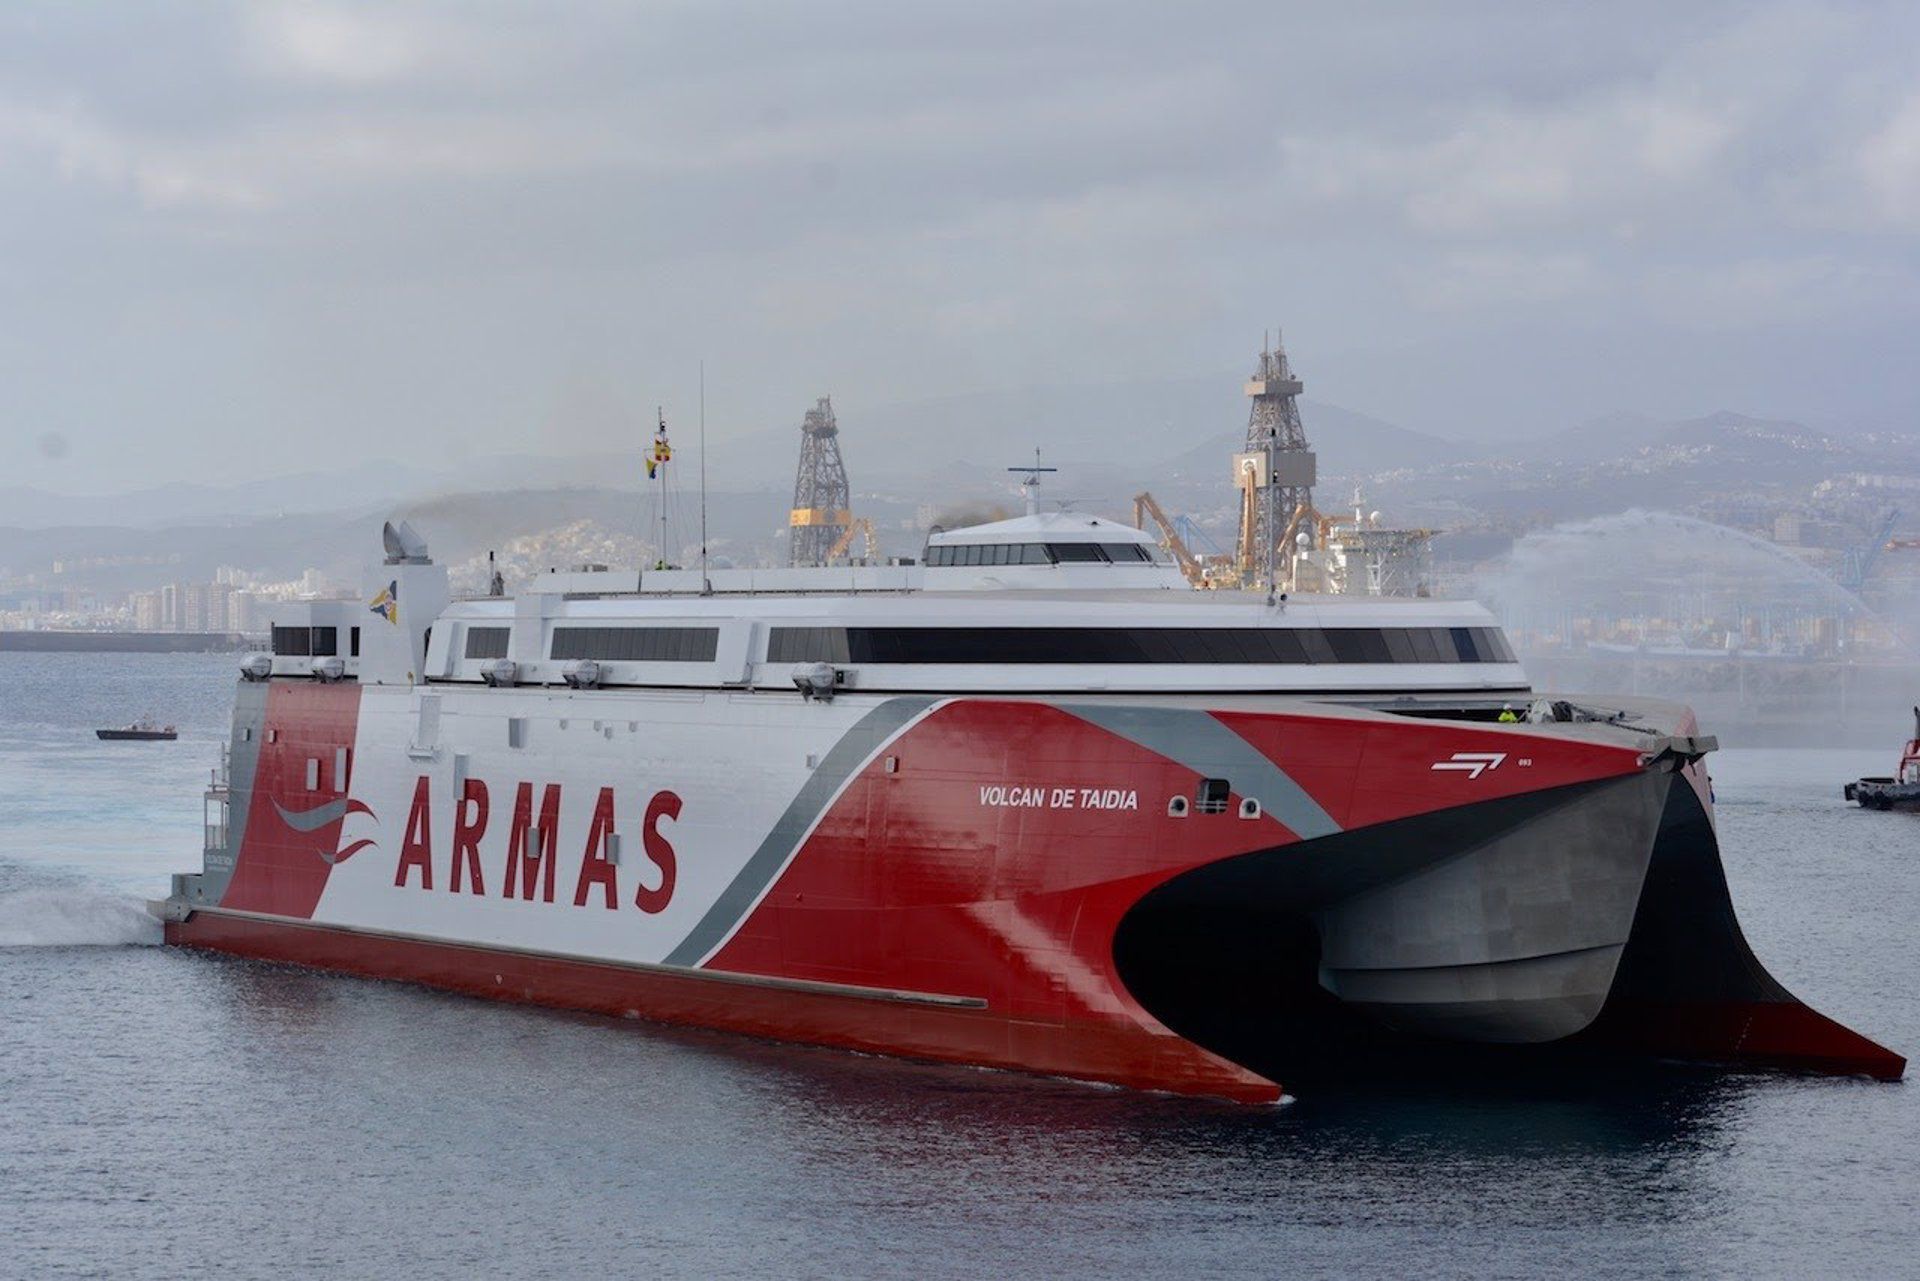 El nuevo  fast ferry de Naviera Armas, Volcán de Taidia, ya se encuentra en el puerto de Las Palmas